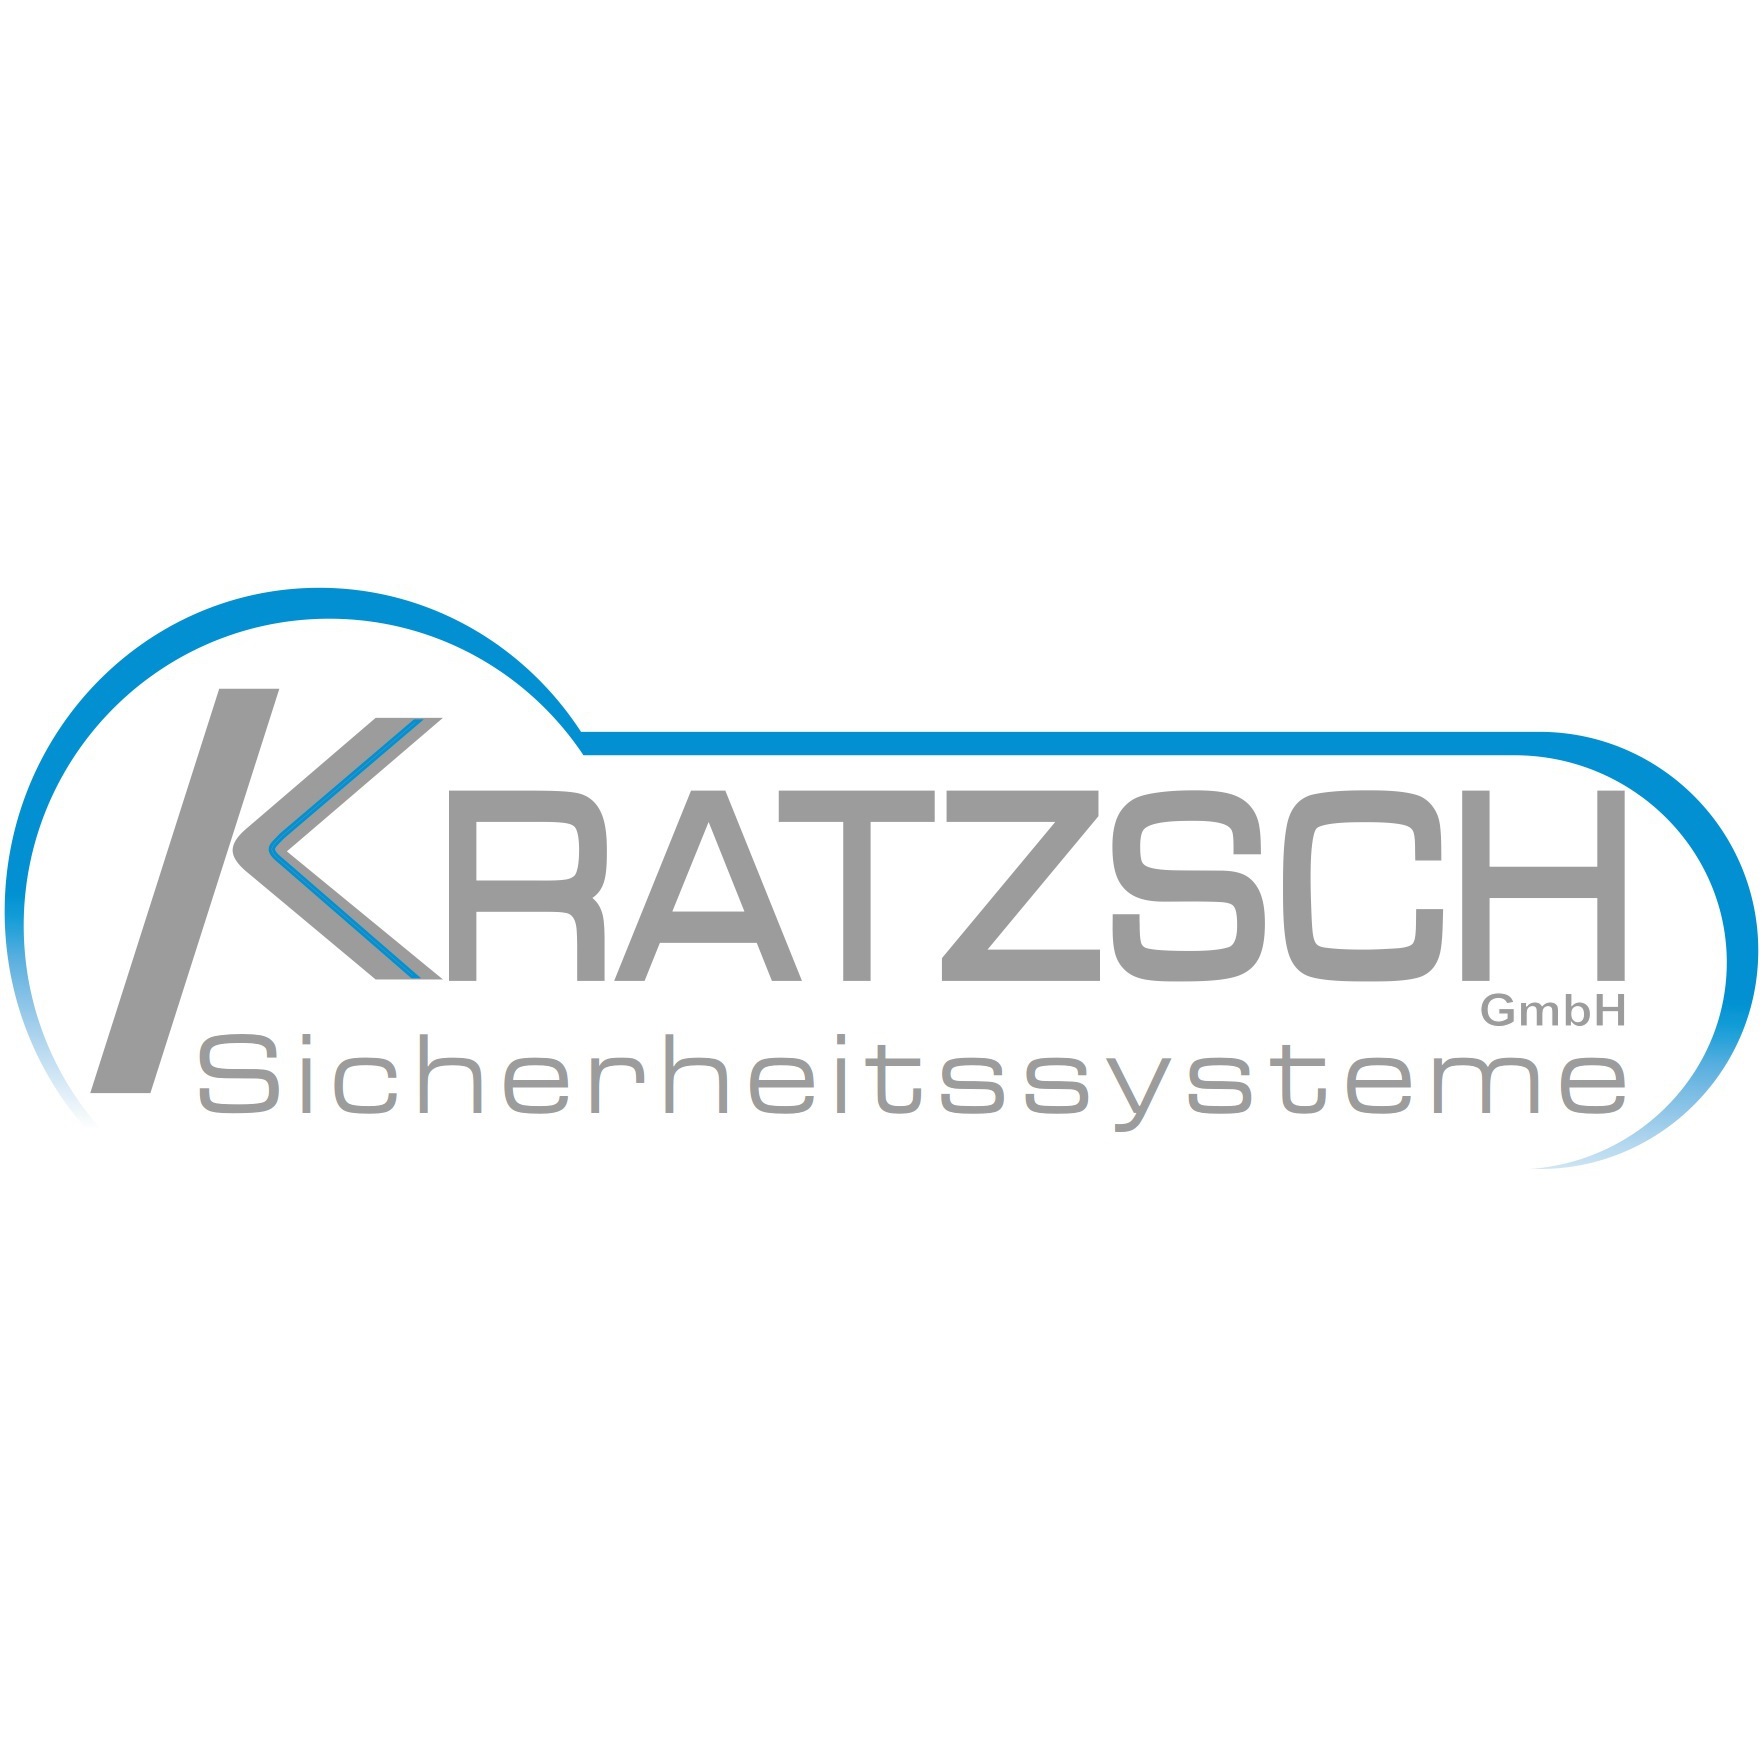 Sicherheitssysteme Kratzsch GmbH Logo